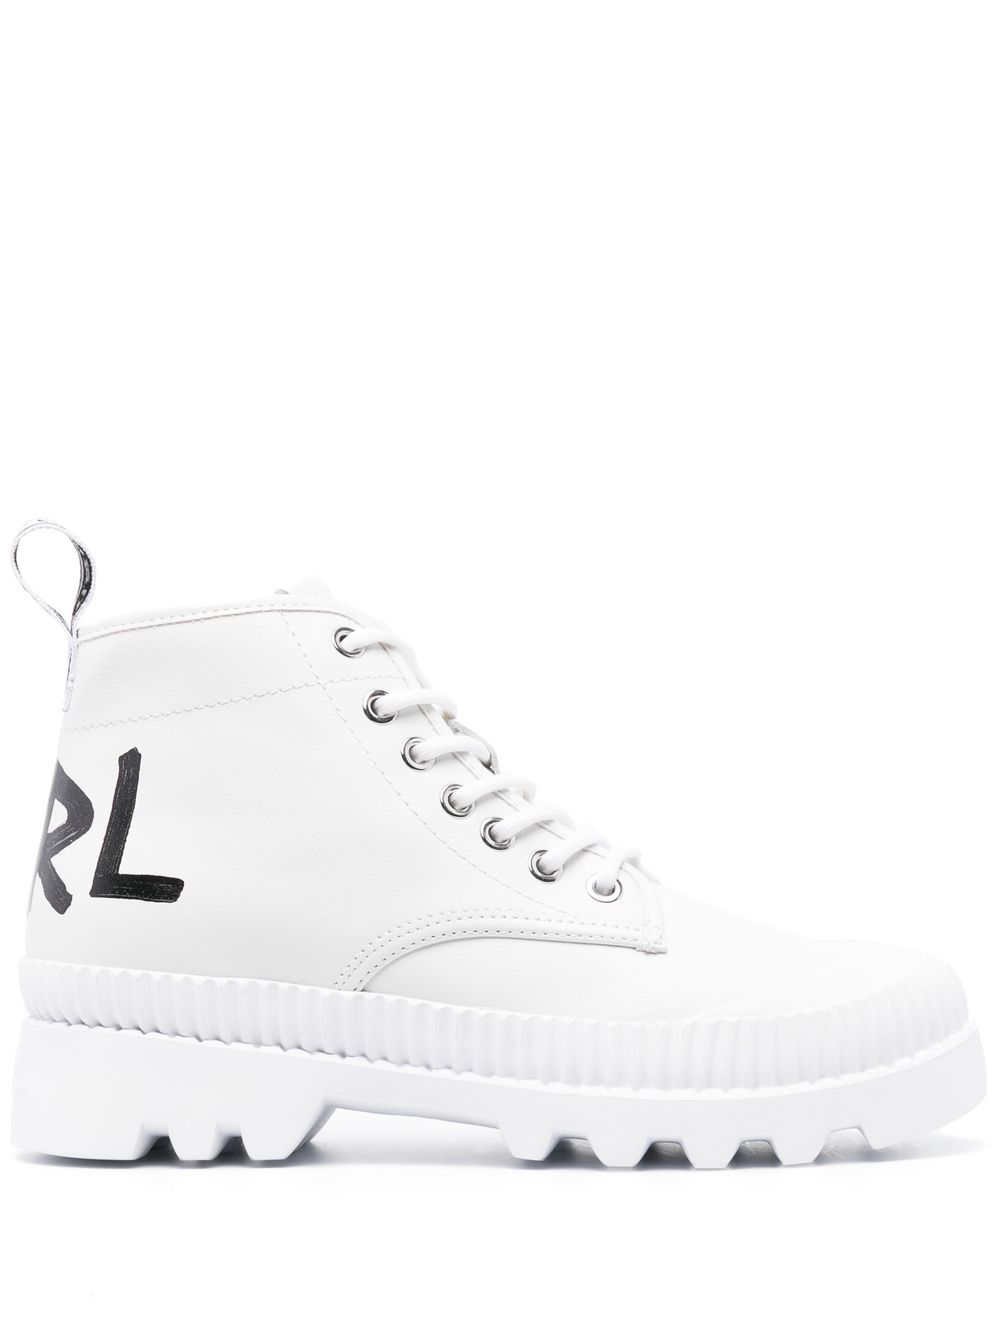 Karl Lagerfeld Trekka Ii Hiker Ankle Boots In Weiss